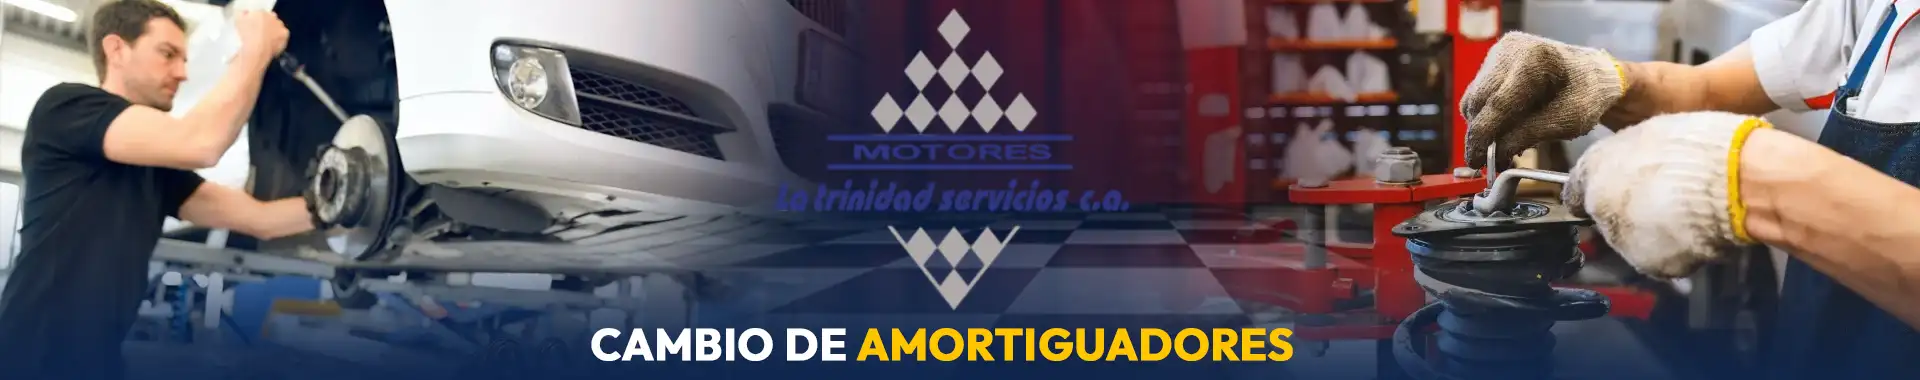 Imagen 4 del perfil de Motores La Trinidad - Servicios